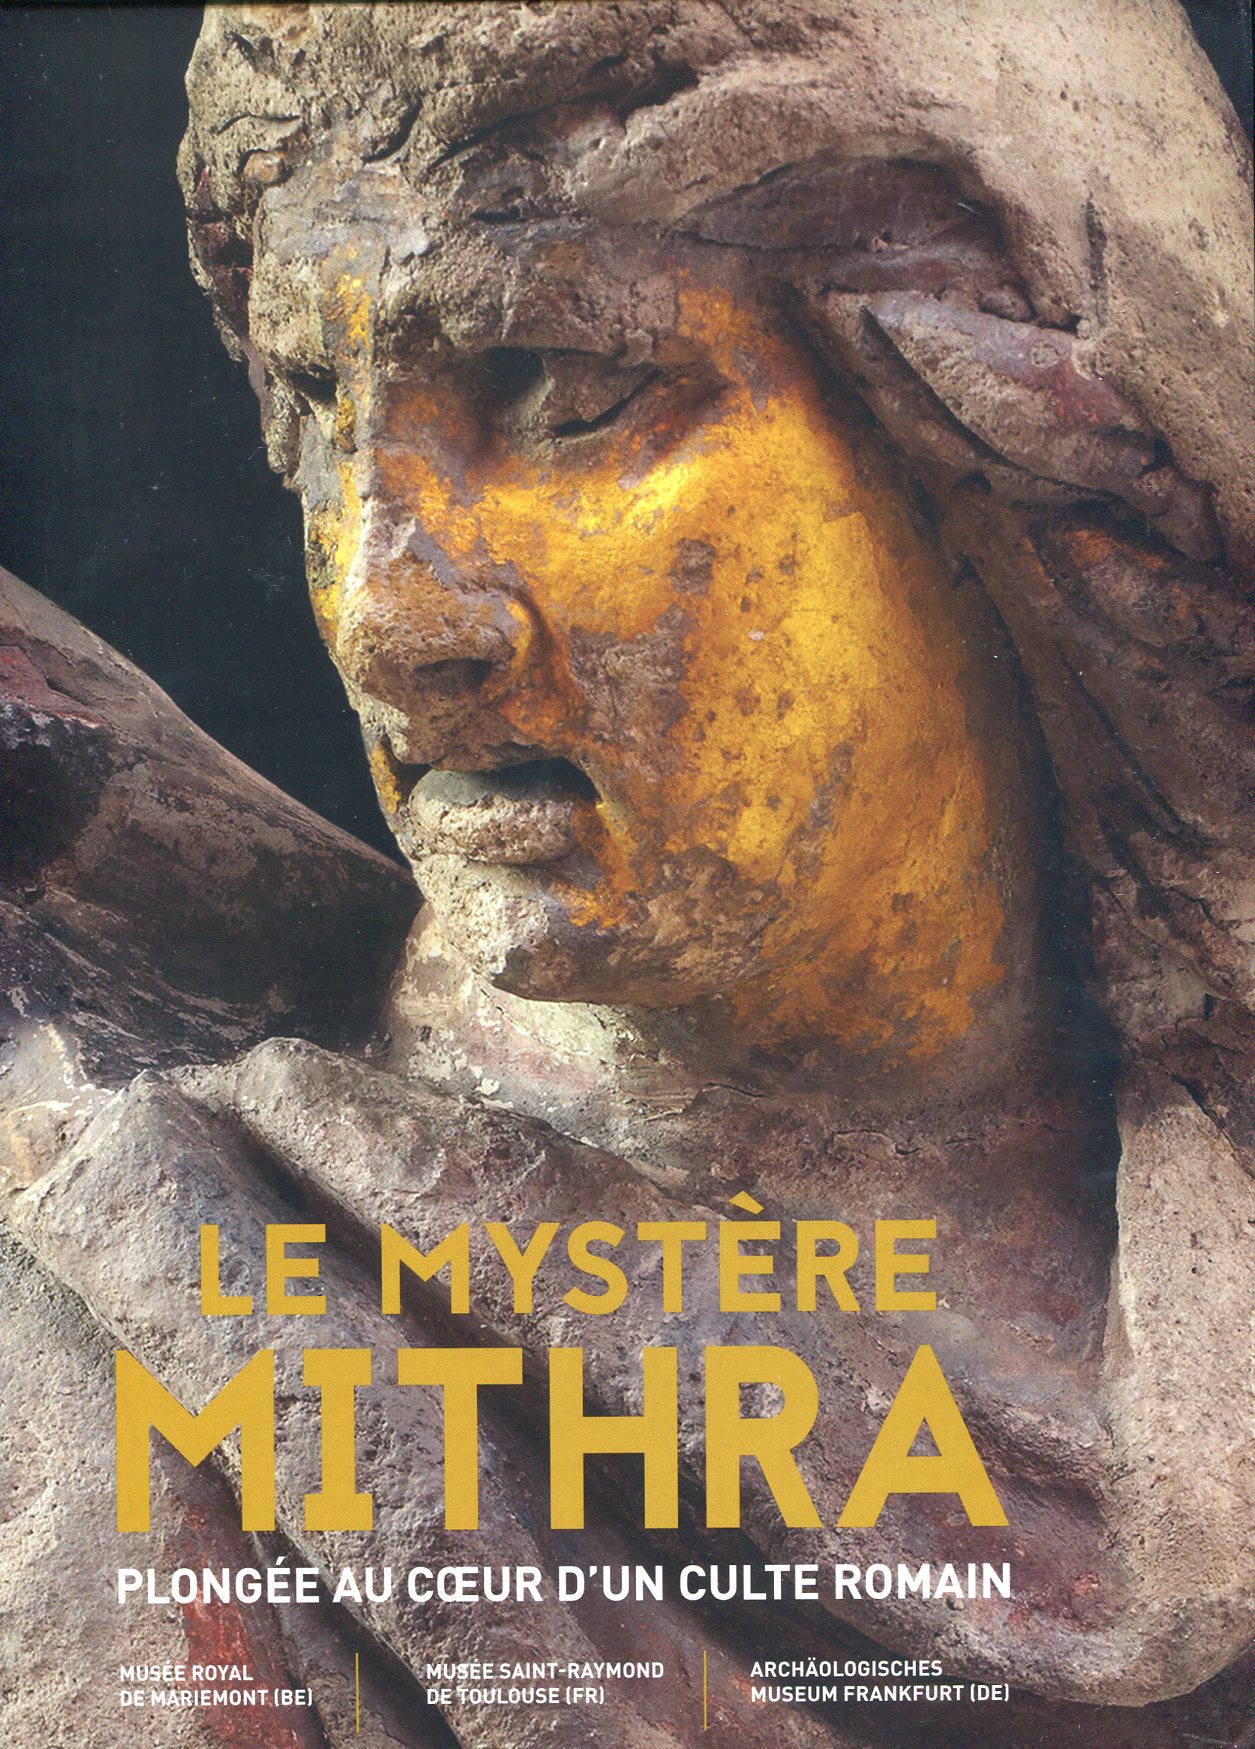 ÉPUISÉ - Le Mystère Mithra. Plongée au cœur d'un culte romain, (cat. expo., Morlanwelz, Musée royal de Mariemont), 2021.